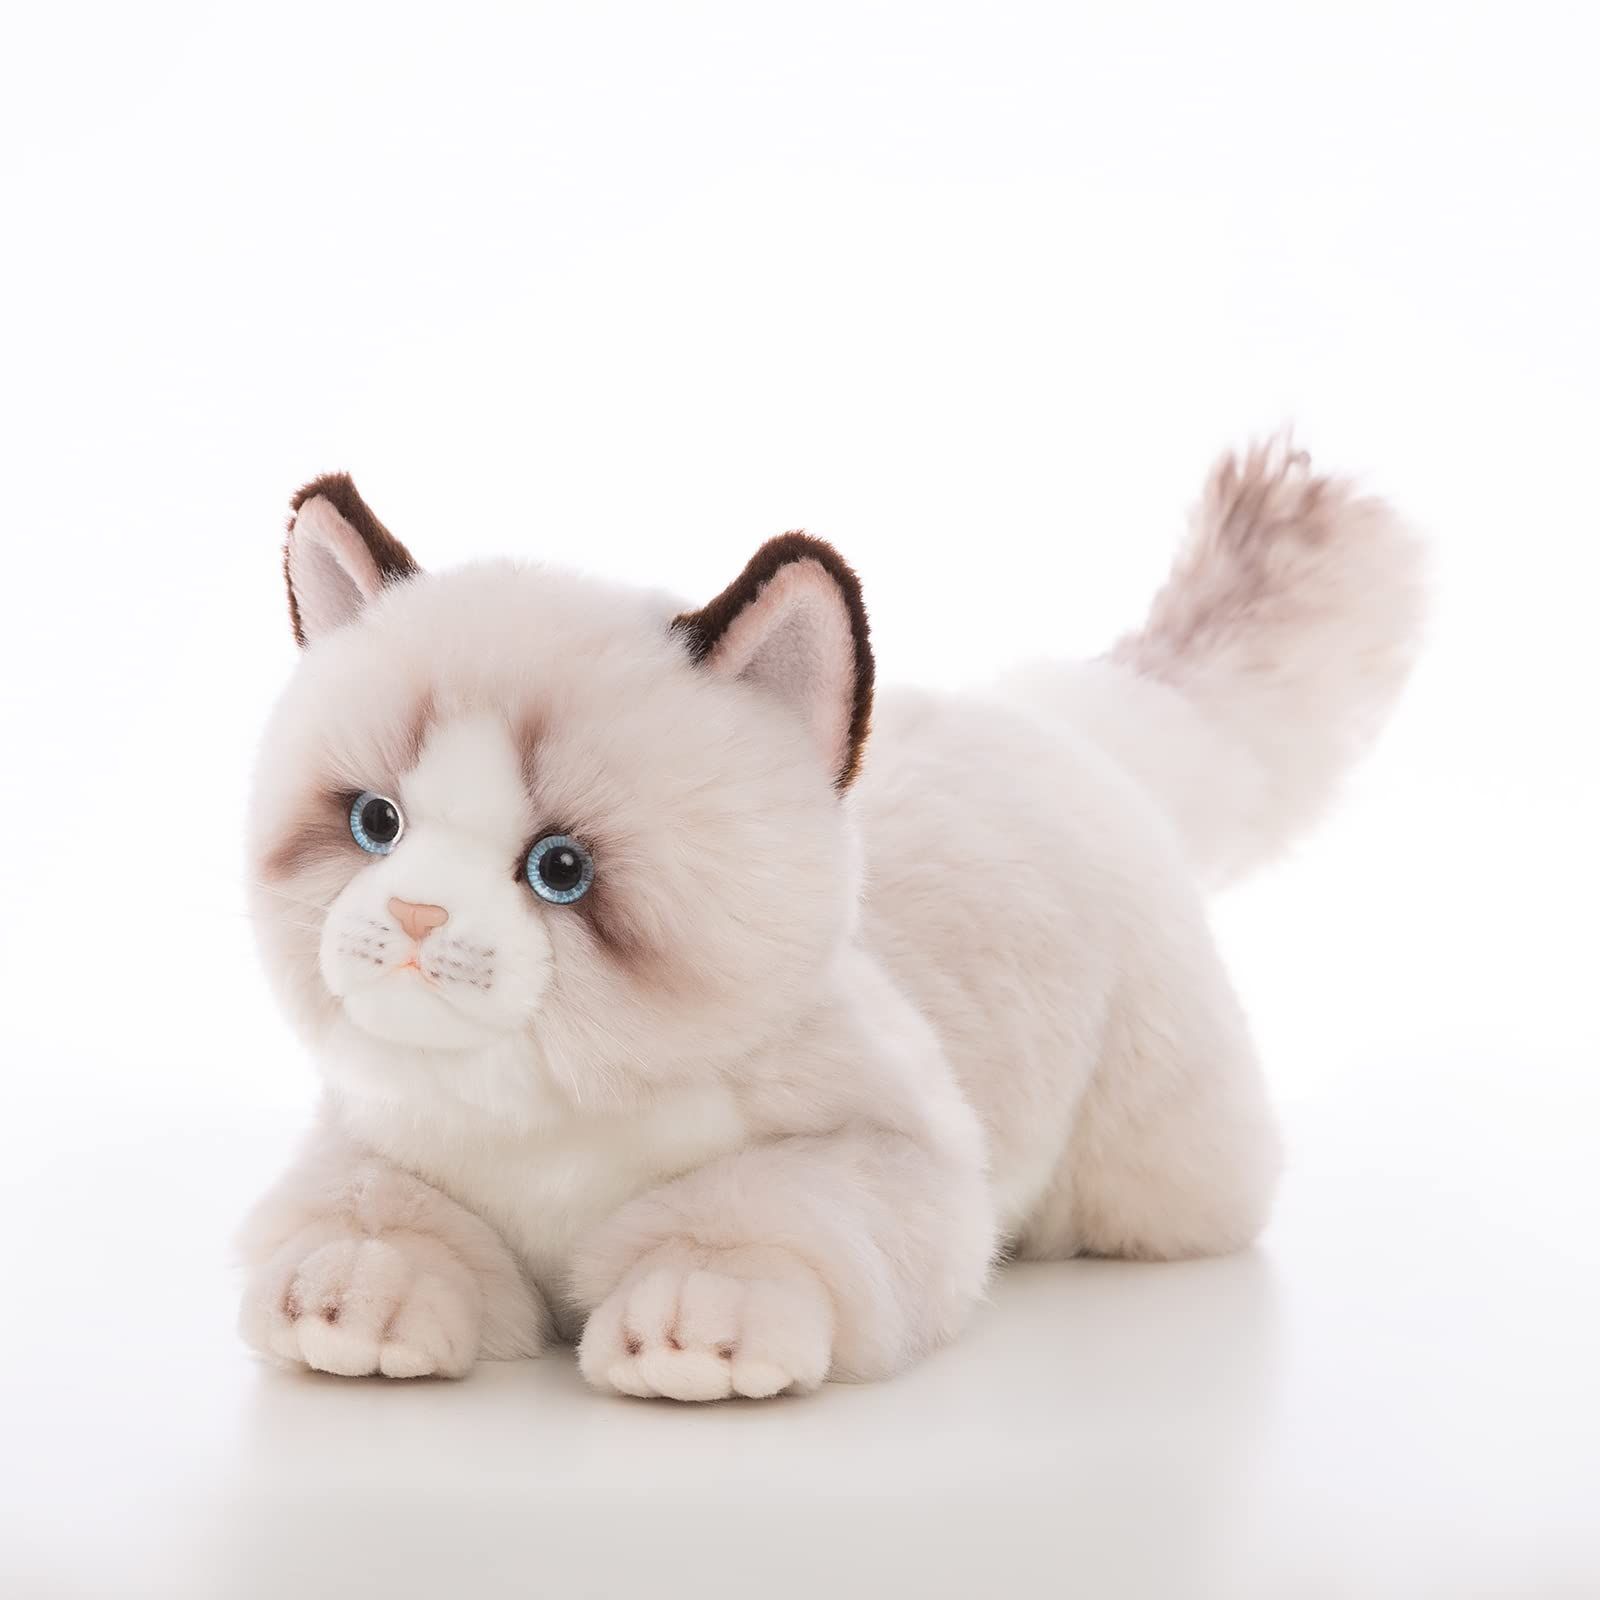 5cm-灰色のラグドール猫ぬいぐるみぬいぐるみ-リアルなアンベイカー猫手作りぬいぐるみプレゼントギフト 快適ライフショップ メルカリ